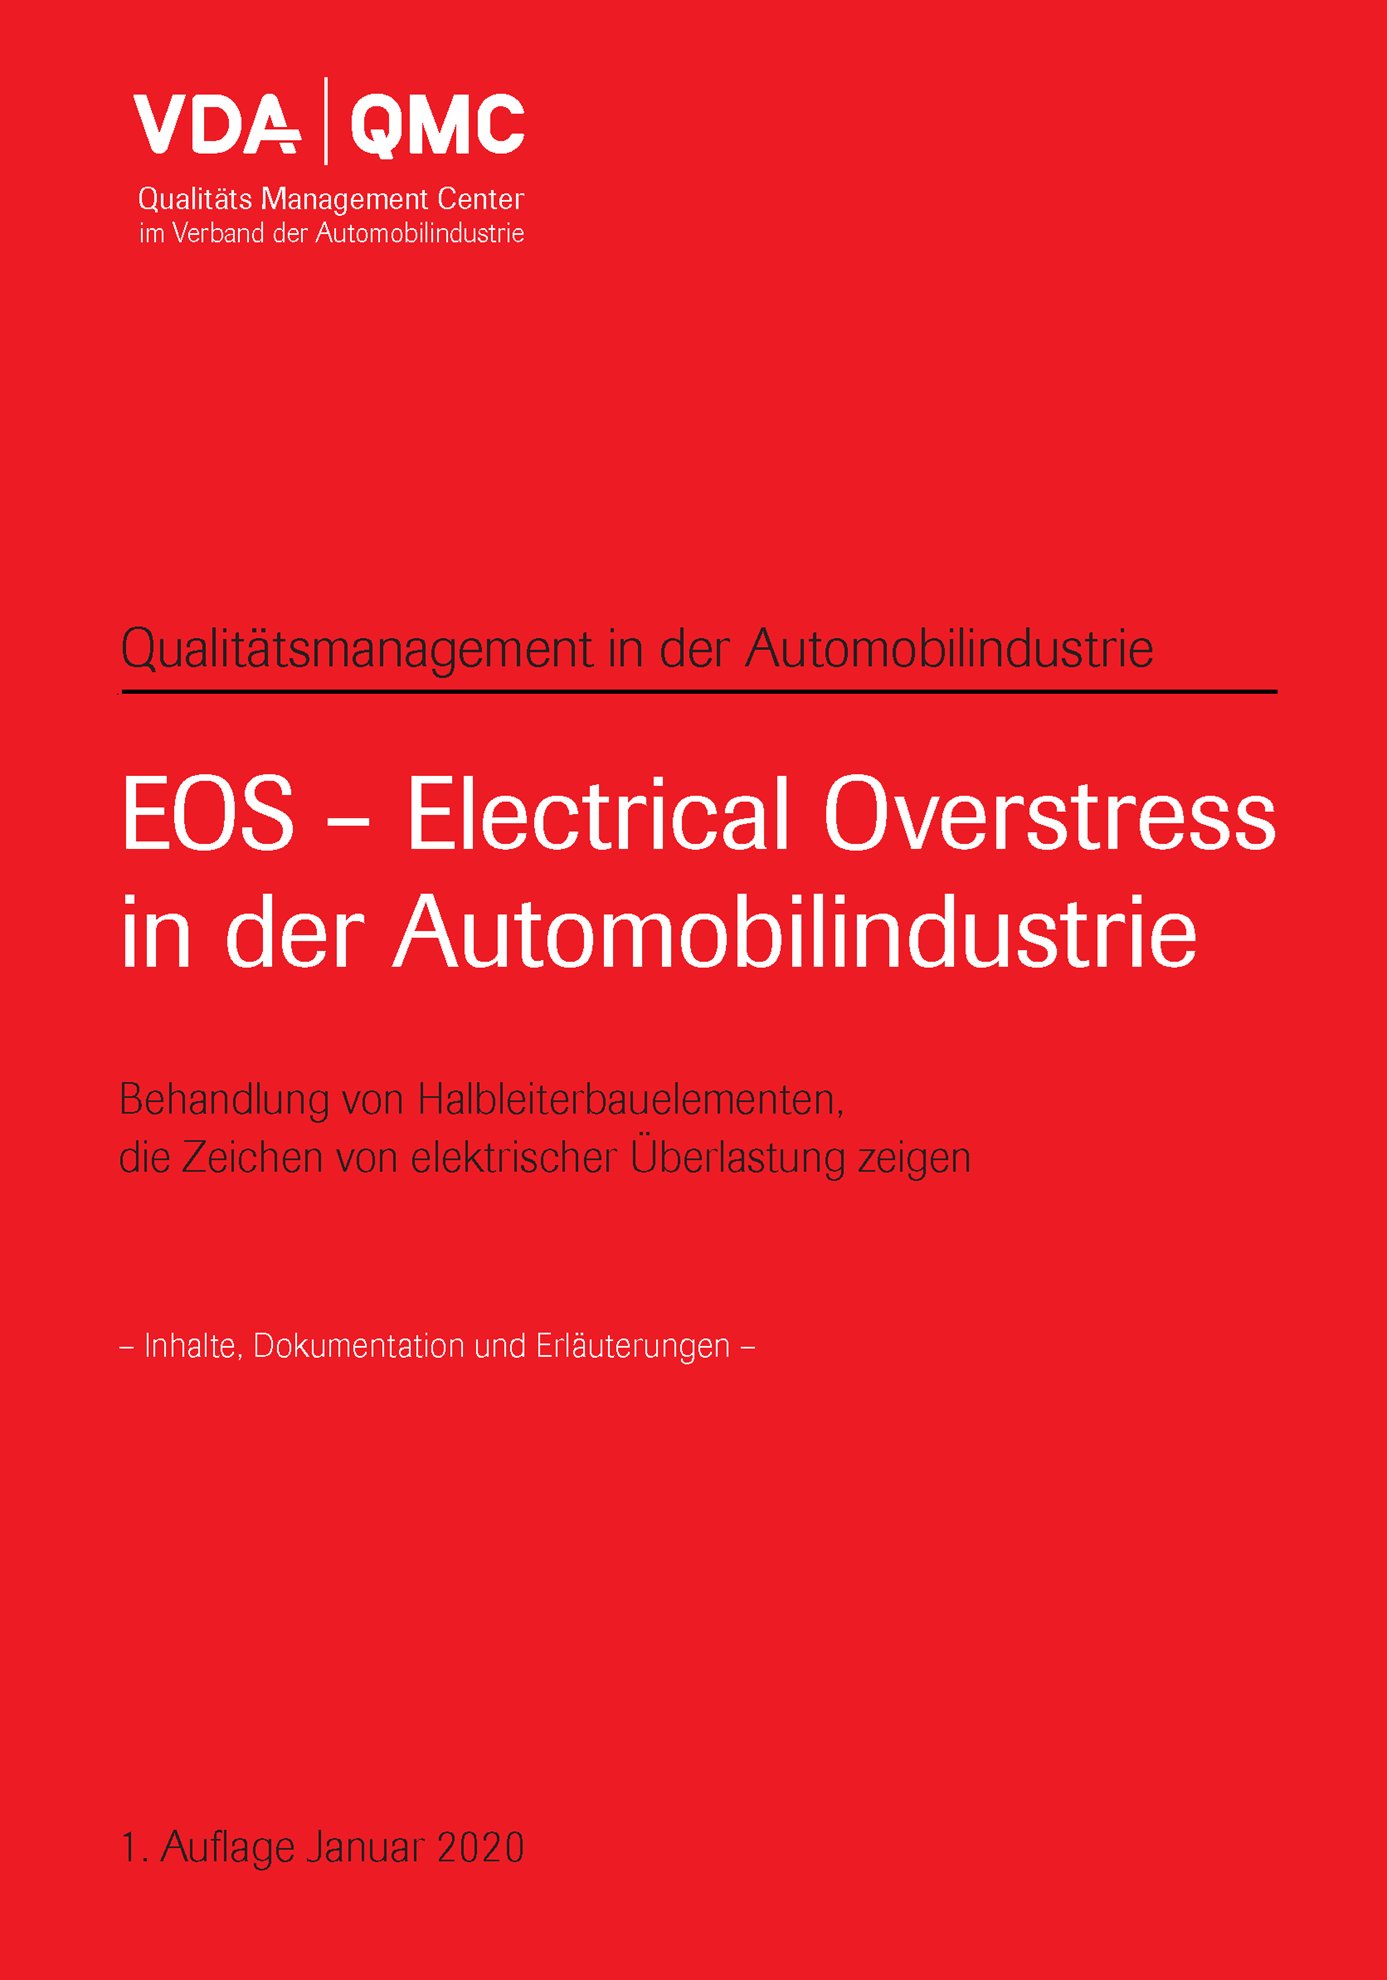 Publications  VDA EOS-Electrical Overstress in der Automobilindustrie, Behandlung von Halbleiterbauelementen, die Zeichen 
 von elektrischer Überlastung zeigen 
 1. Auflage, Januar 2020 1.1.2020 preview